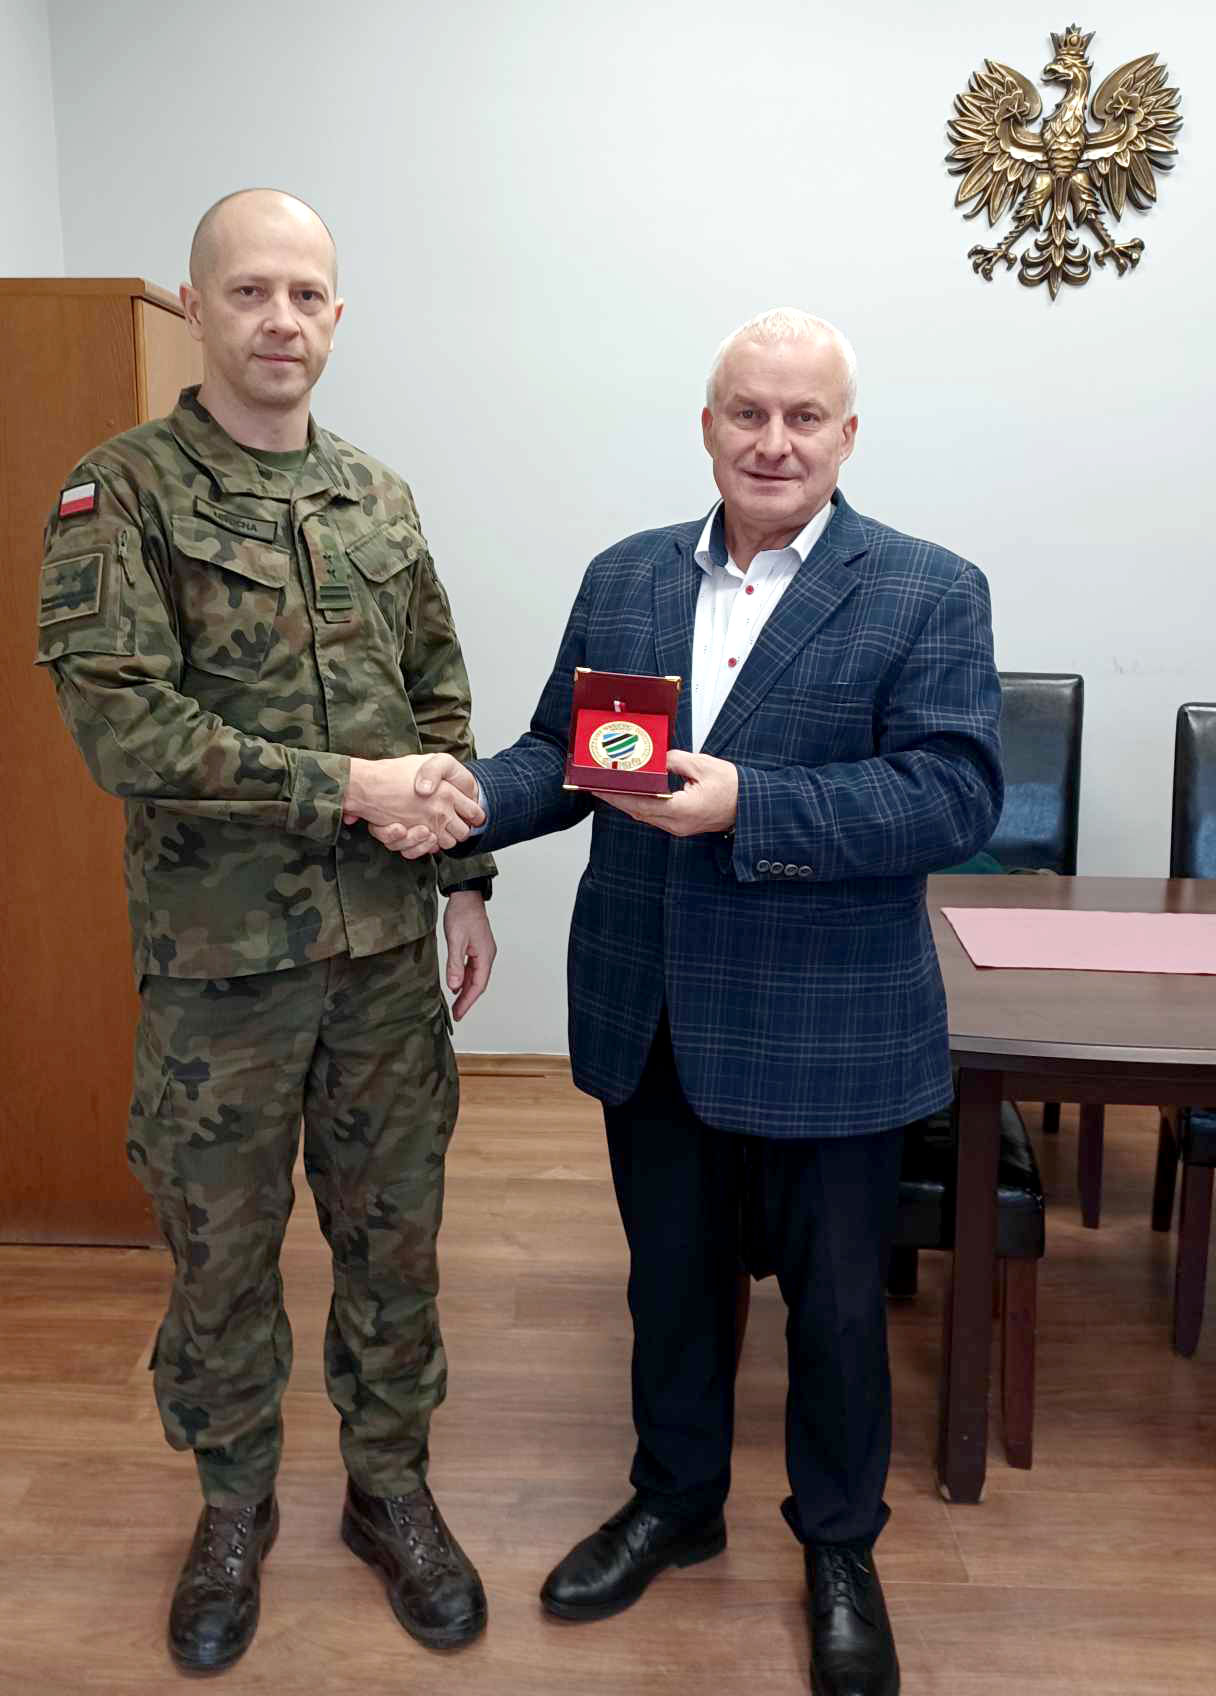 Ilustracja do informacji: Spotkanie z Szefem Wojskowego Centrum Rekrutacji w Żaganiu